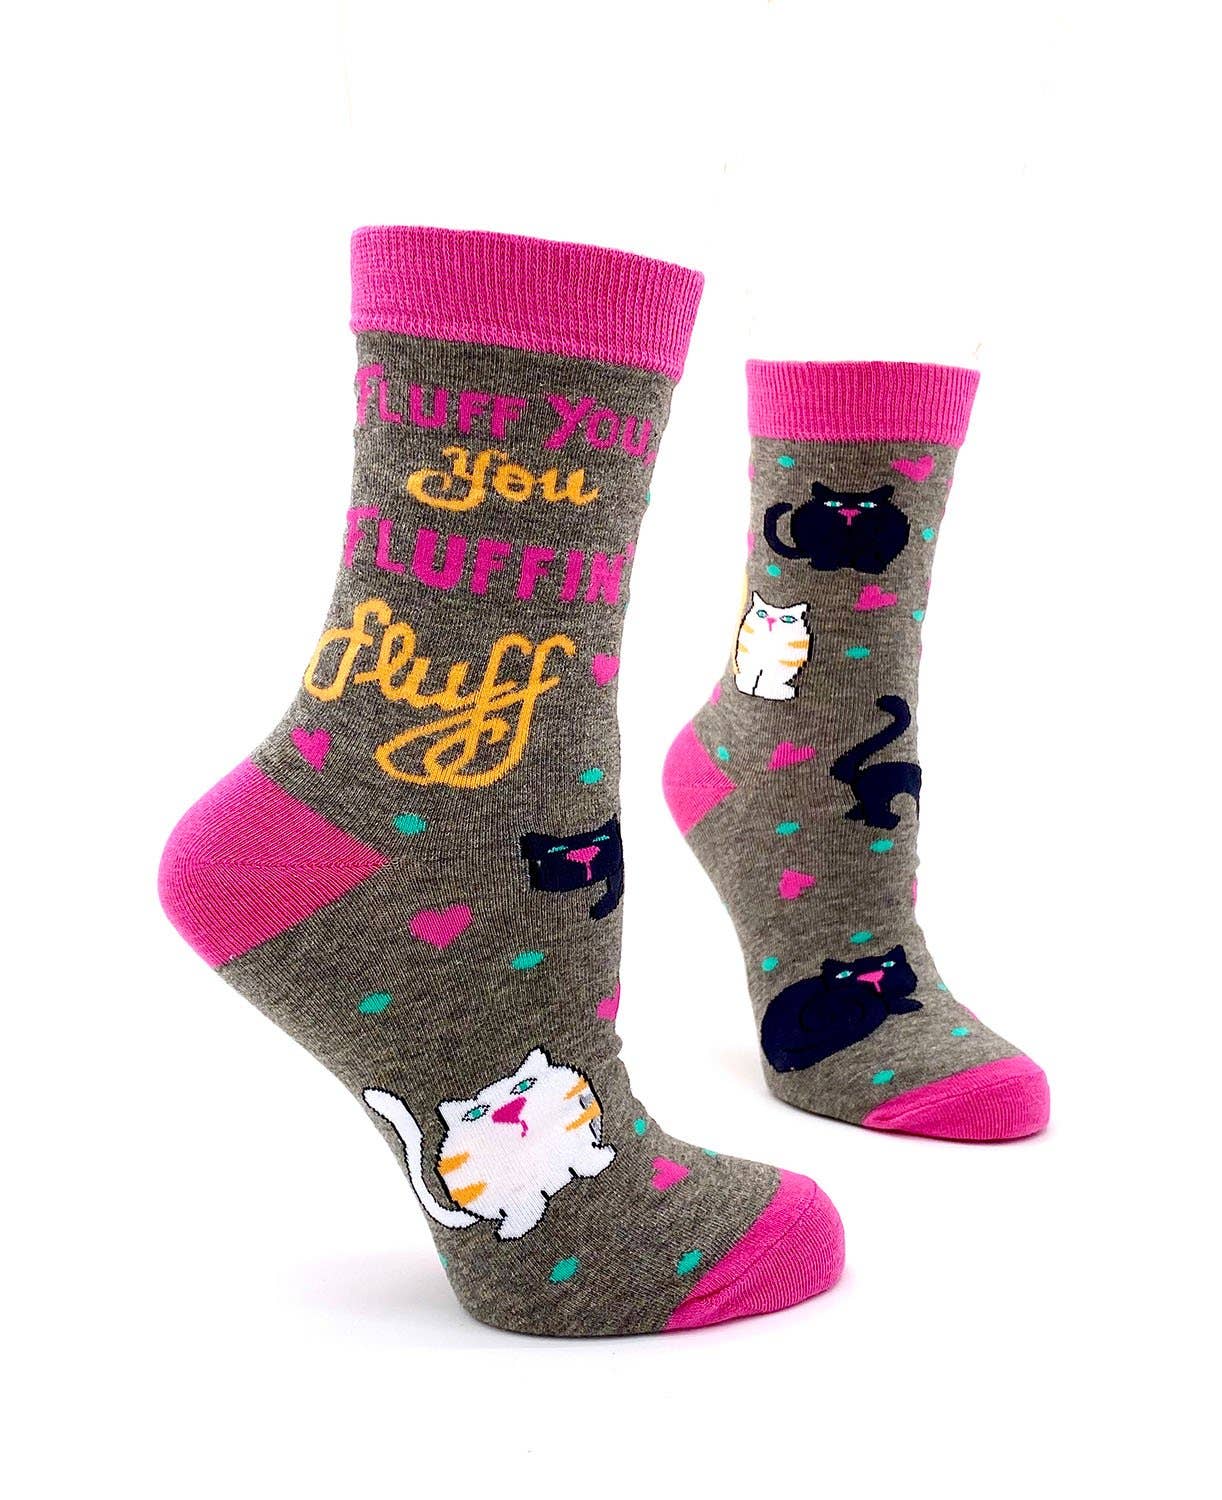 Women's "Fluff You You Fluffin' Fluff" Cat Socks